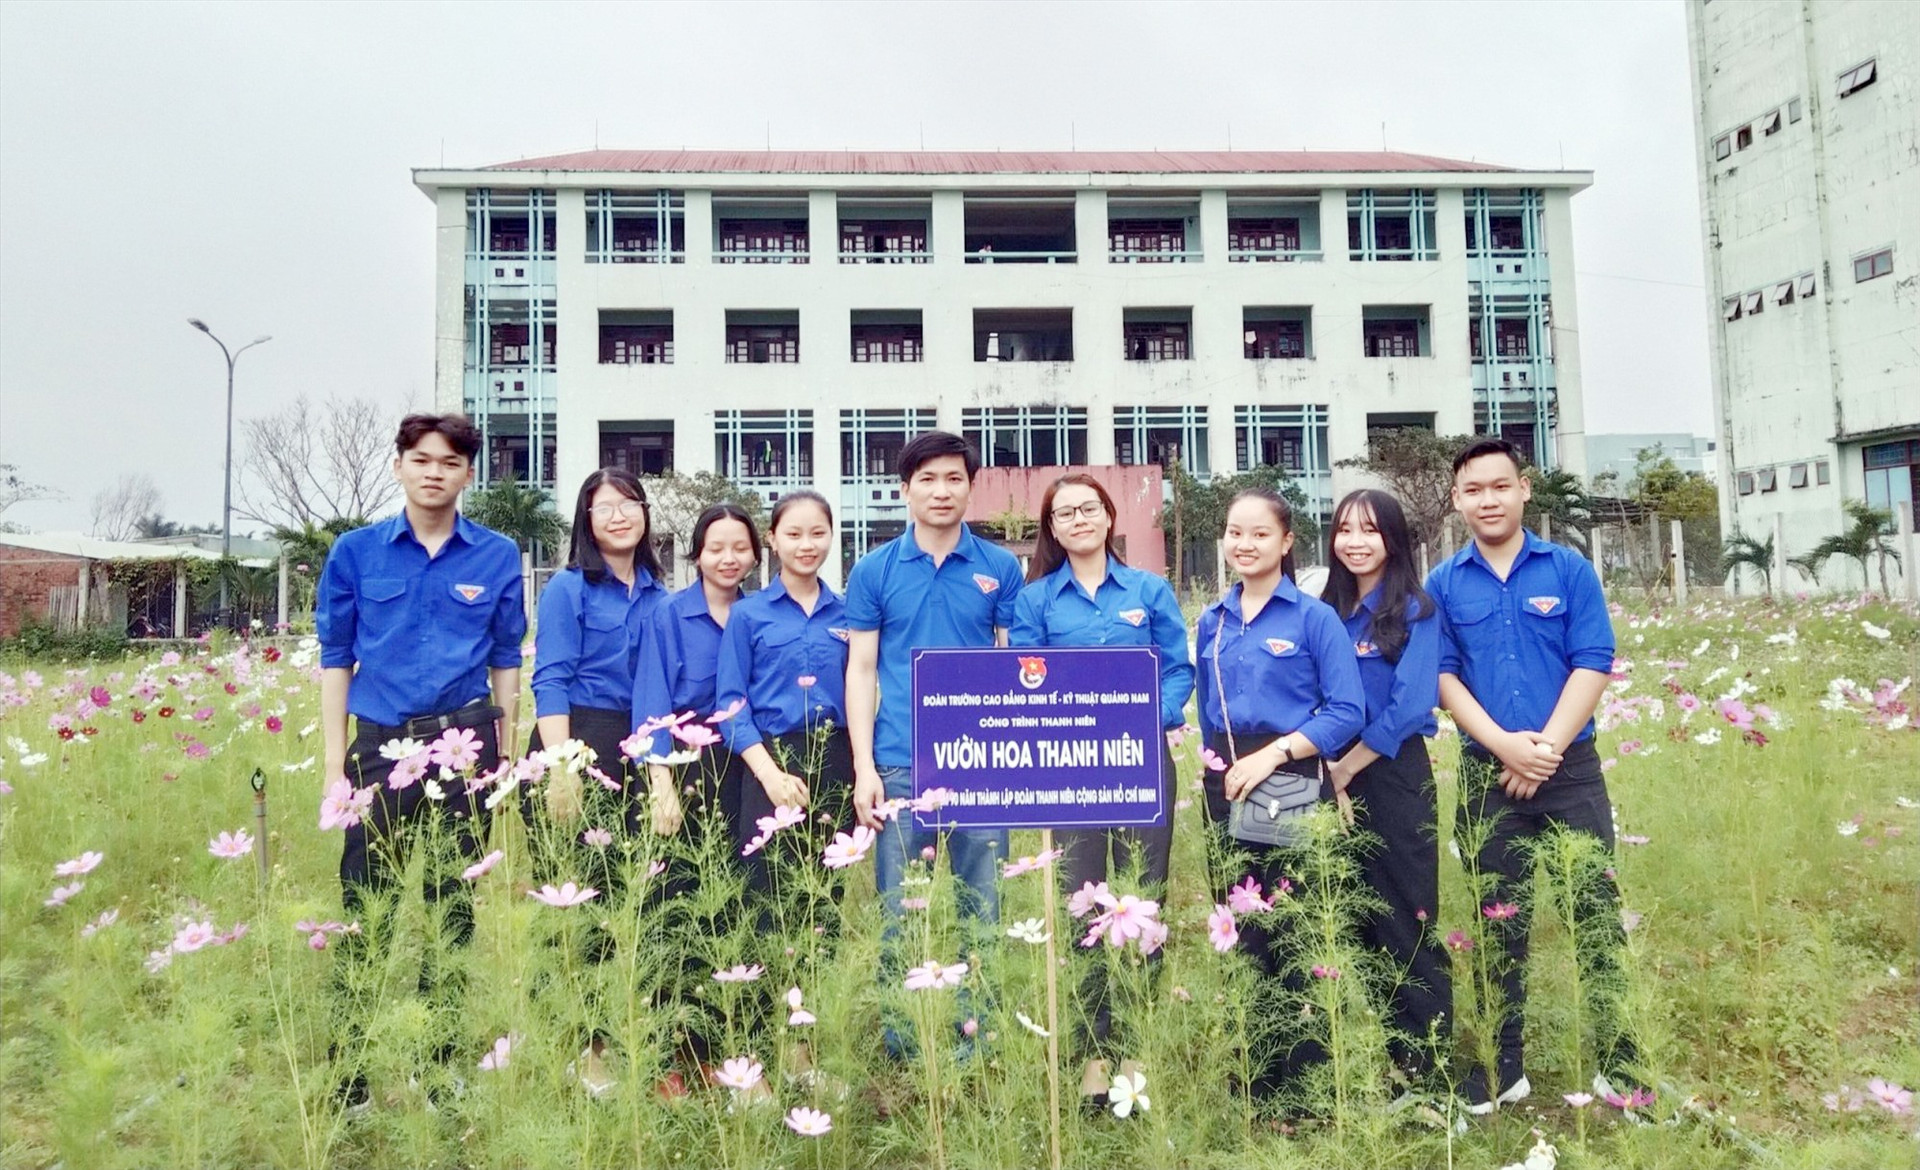 Đoàn trường Cao đẳng Kinh tế - kỹ thuật Quảng Nam khánh thành công trình “Vườn hoa thanh niên”. Ảnh: ĐOÀN TRƯỜNG